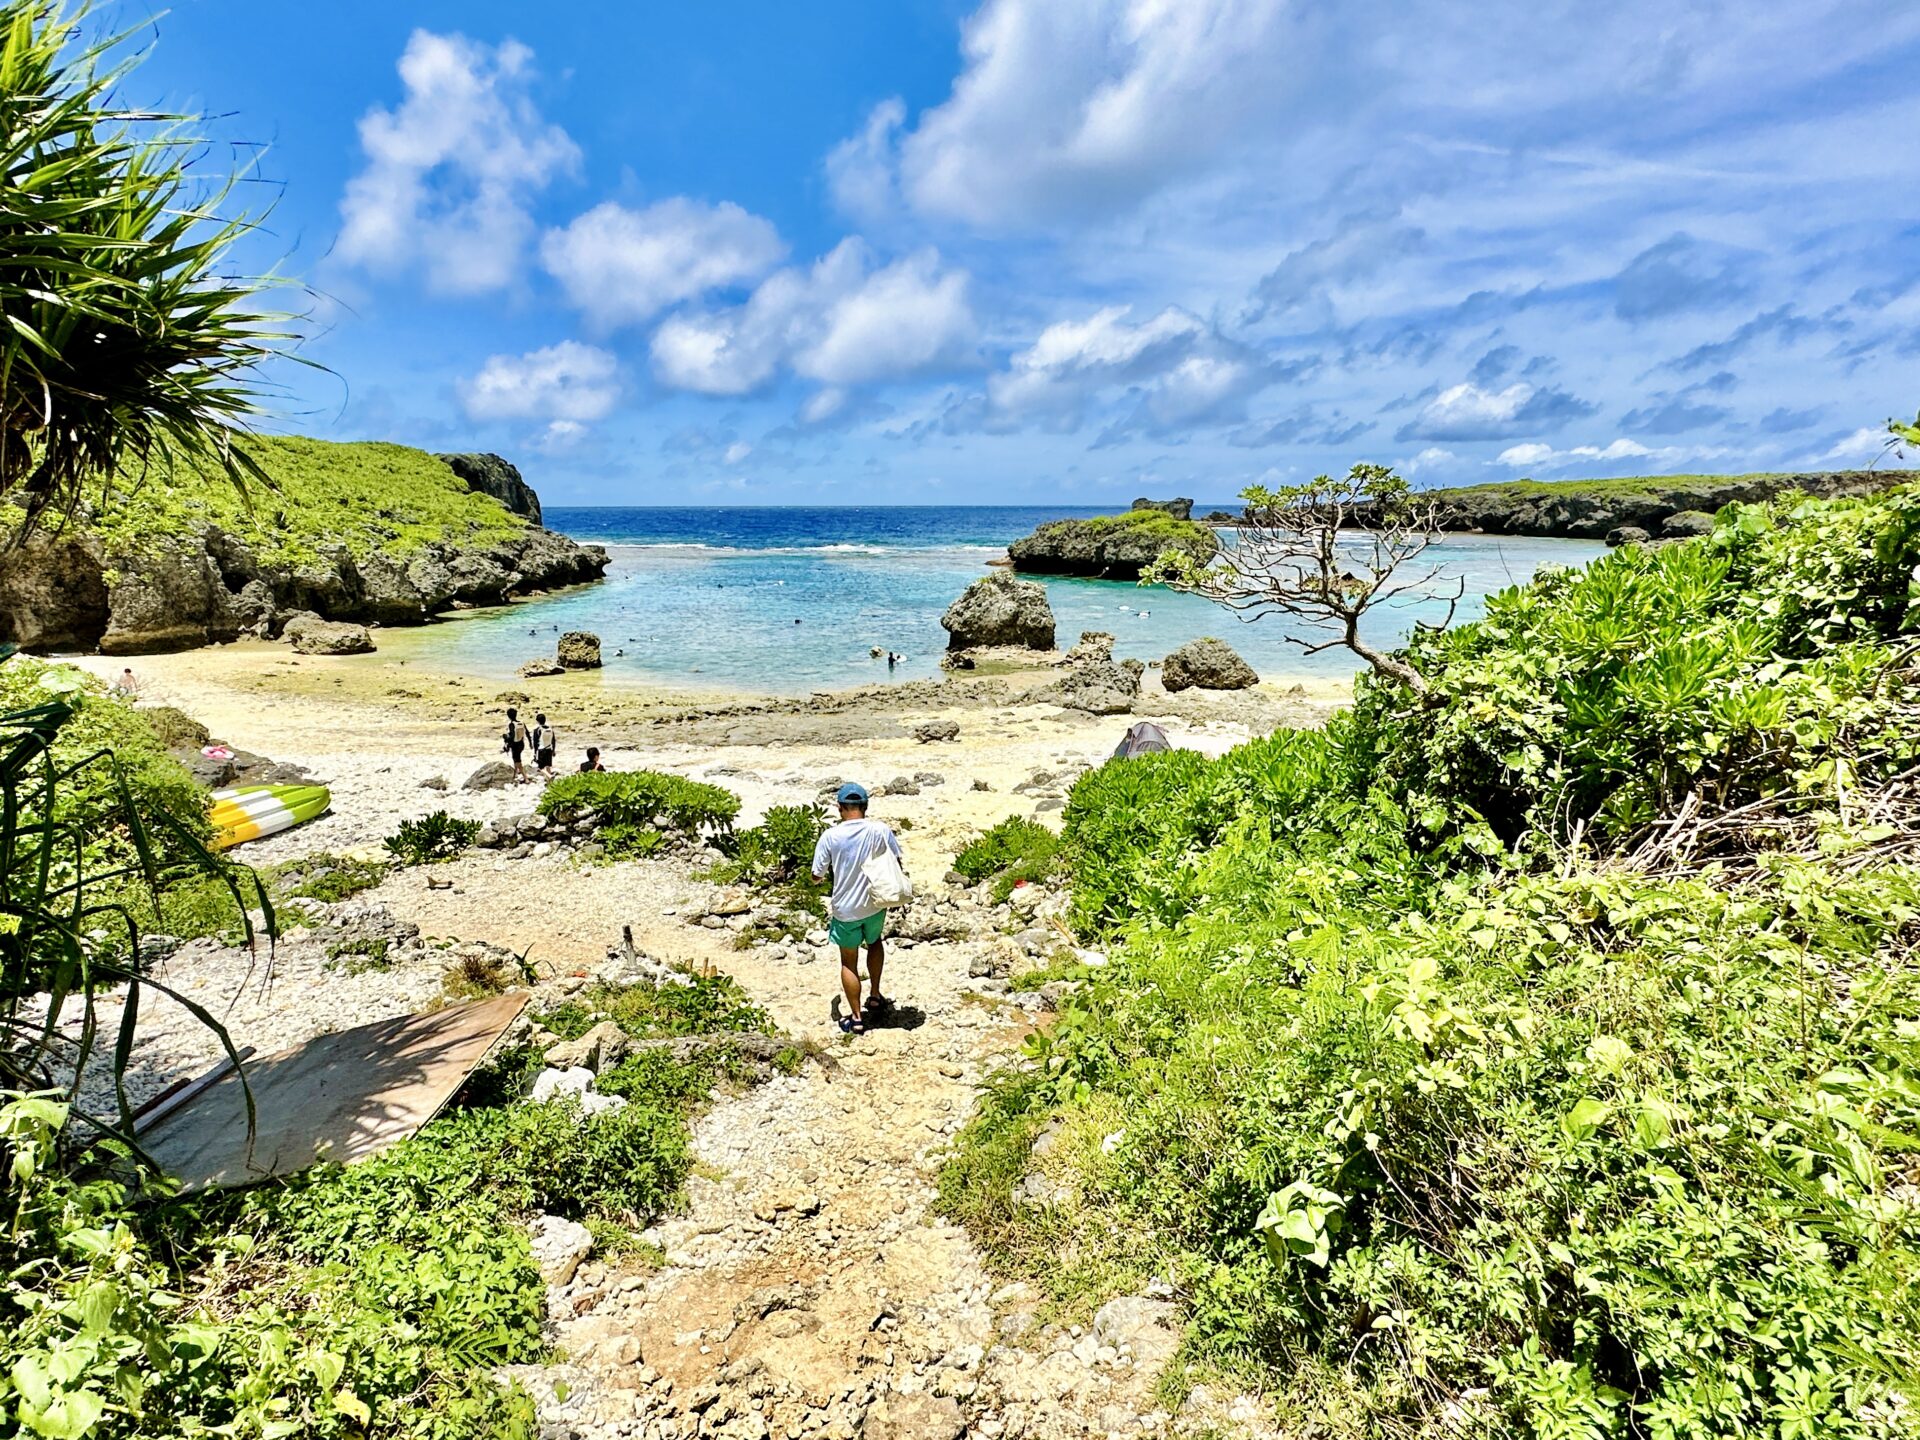 【ブログ旅行記】はじめての宮古島旅行 3泊4日ゆったりモデルコース 中の島海岸